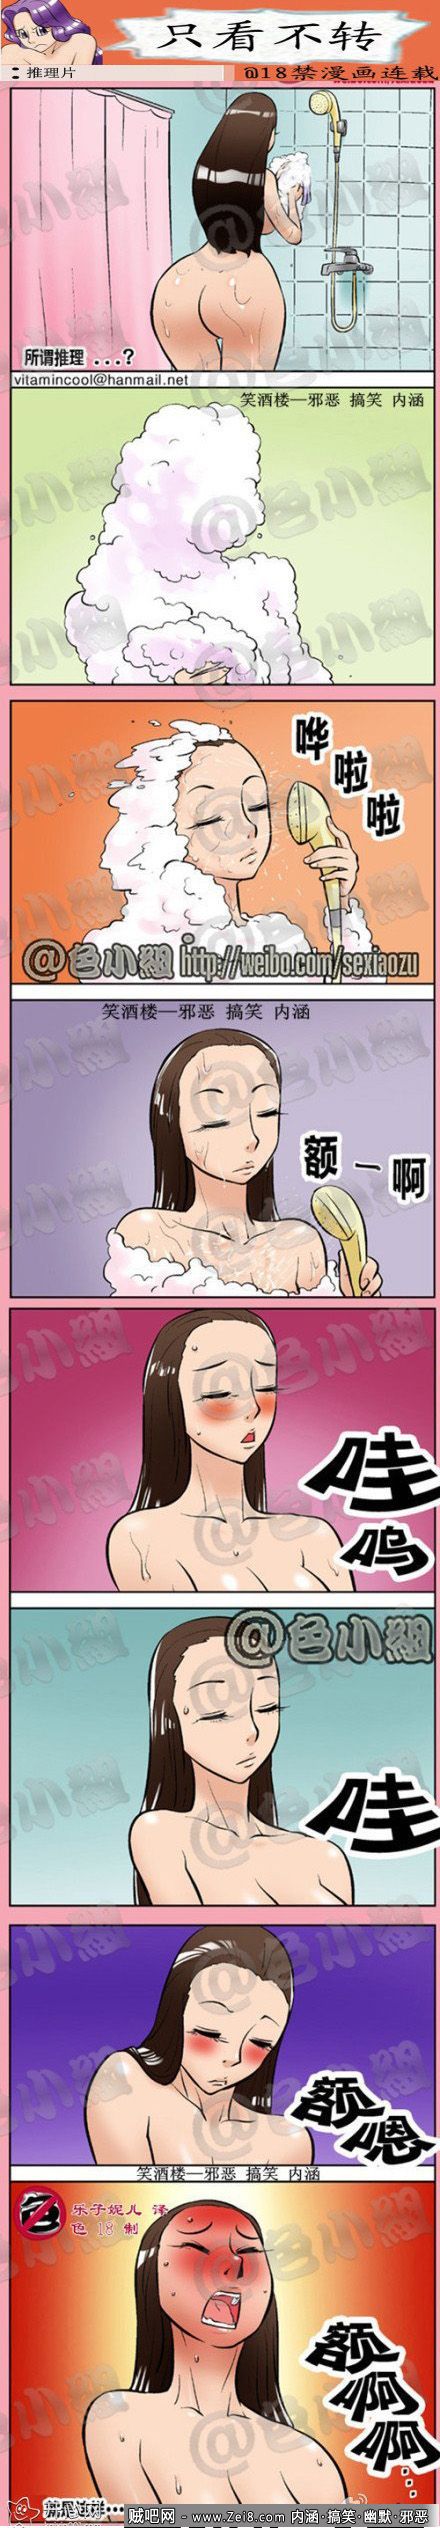 [韩国美女洗澡漫画]：特殊刺激